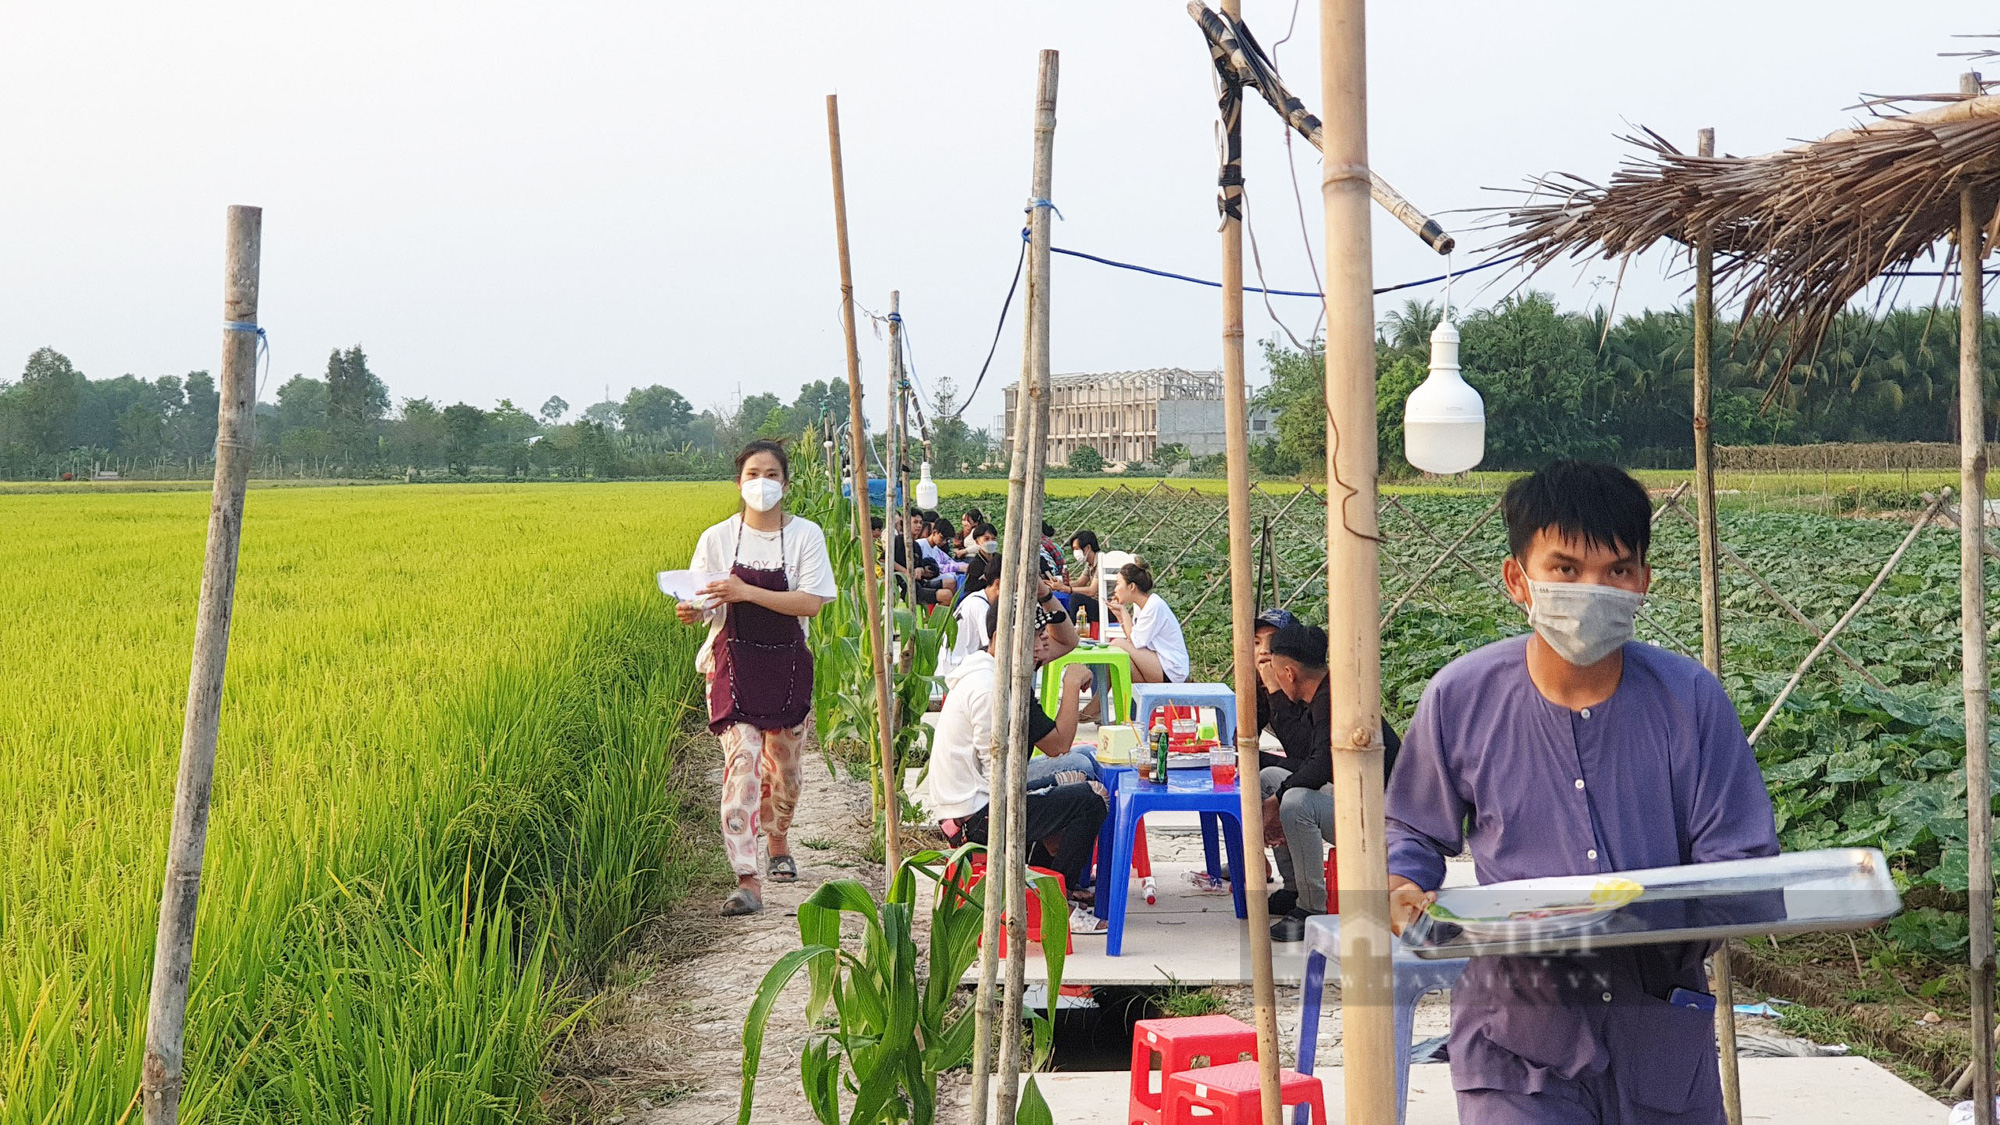 Quán ăn giữa ruộng ở Cần Thơ bất ngờ thu hút cả trăm người dân đến ăn, chụp ảnh mỗi ngày - Ảnh 4.